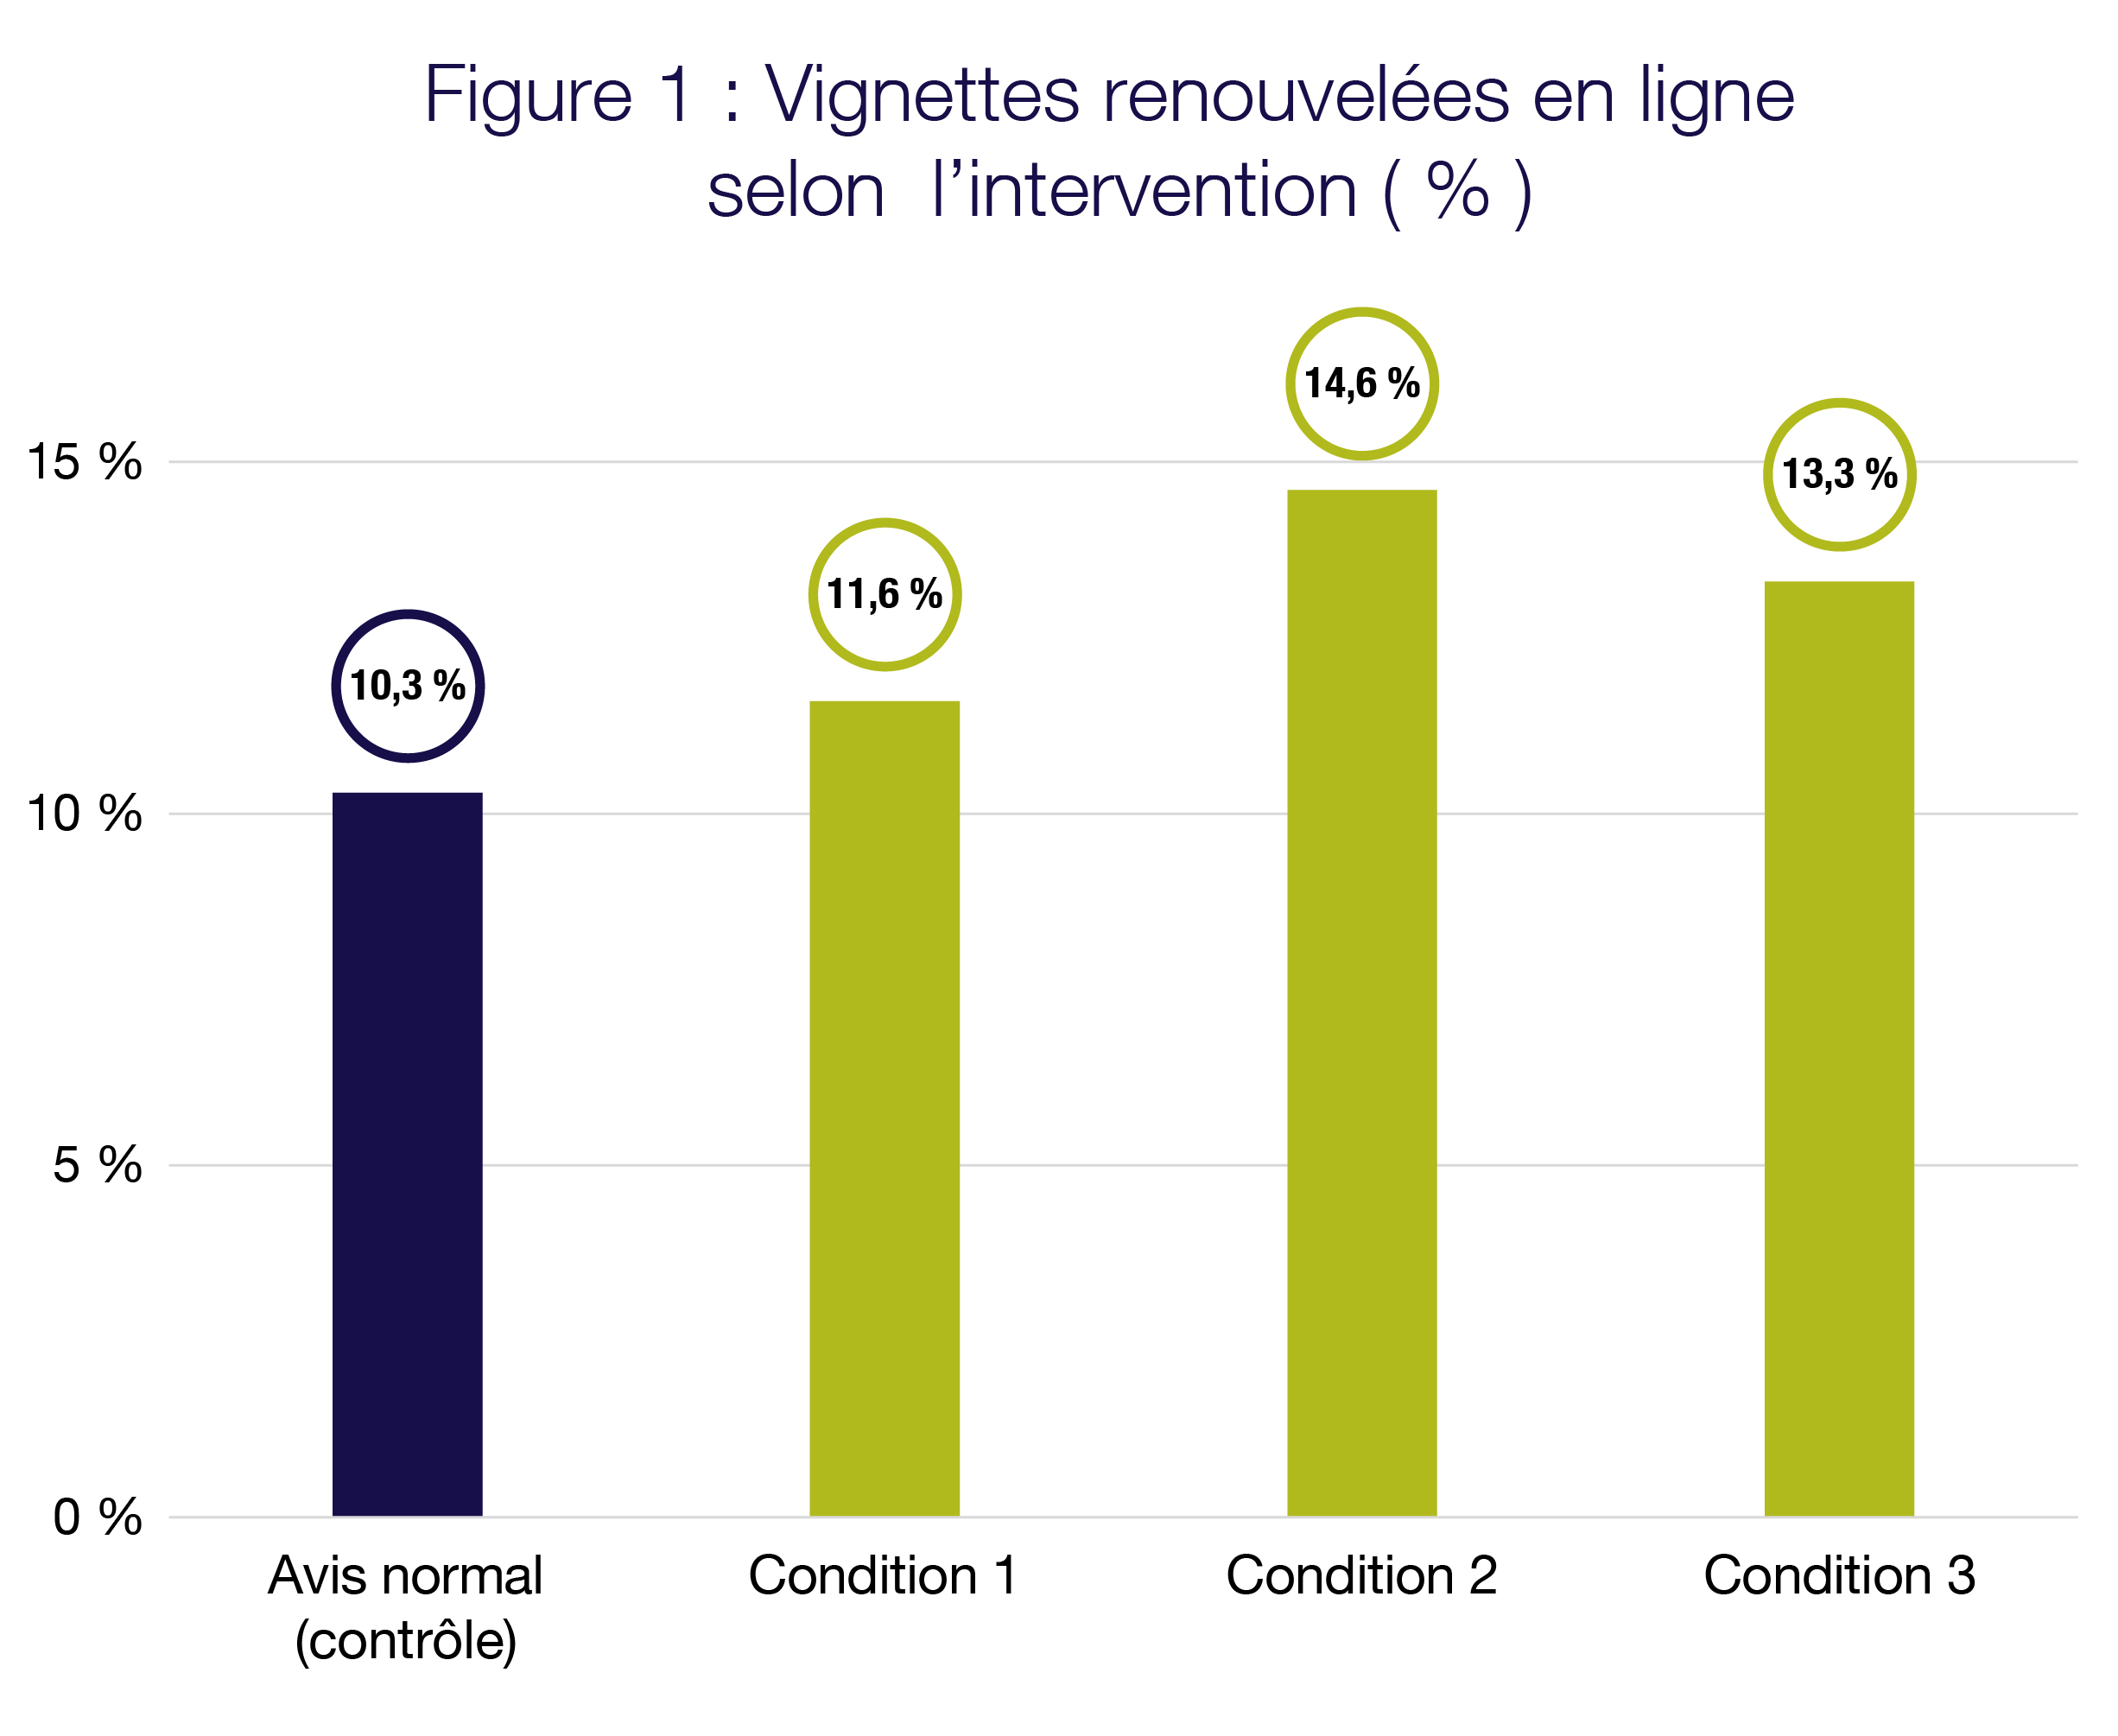 Tableau illustrant le pourcentage de vignettes d’immatriculation renouvelées en ligne, par condition. Avis normal 10,3 %. Condition 1 11,6 %. 	Condition 2 14,6 %	Condition 3 13,3 %.